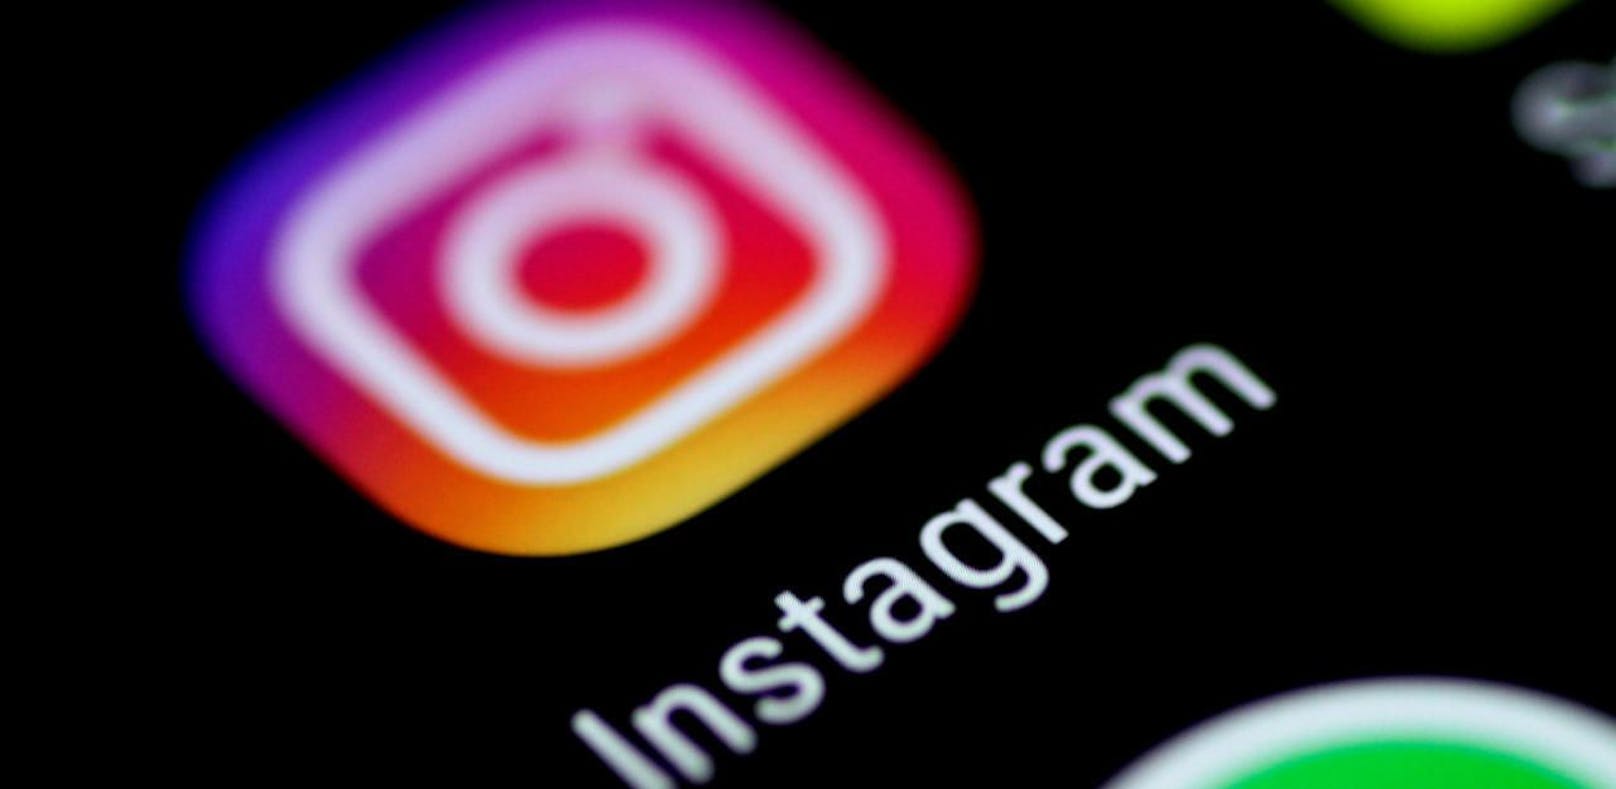 Ein 19-jähriger Bosnier verschickte über Instagram ein Video mit verbotenem pornografischem Inhalt an Kollegen. Dafür hätte er einen Landesverweis kassieren können.